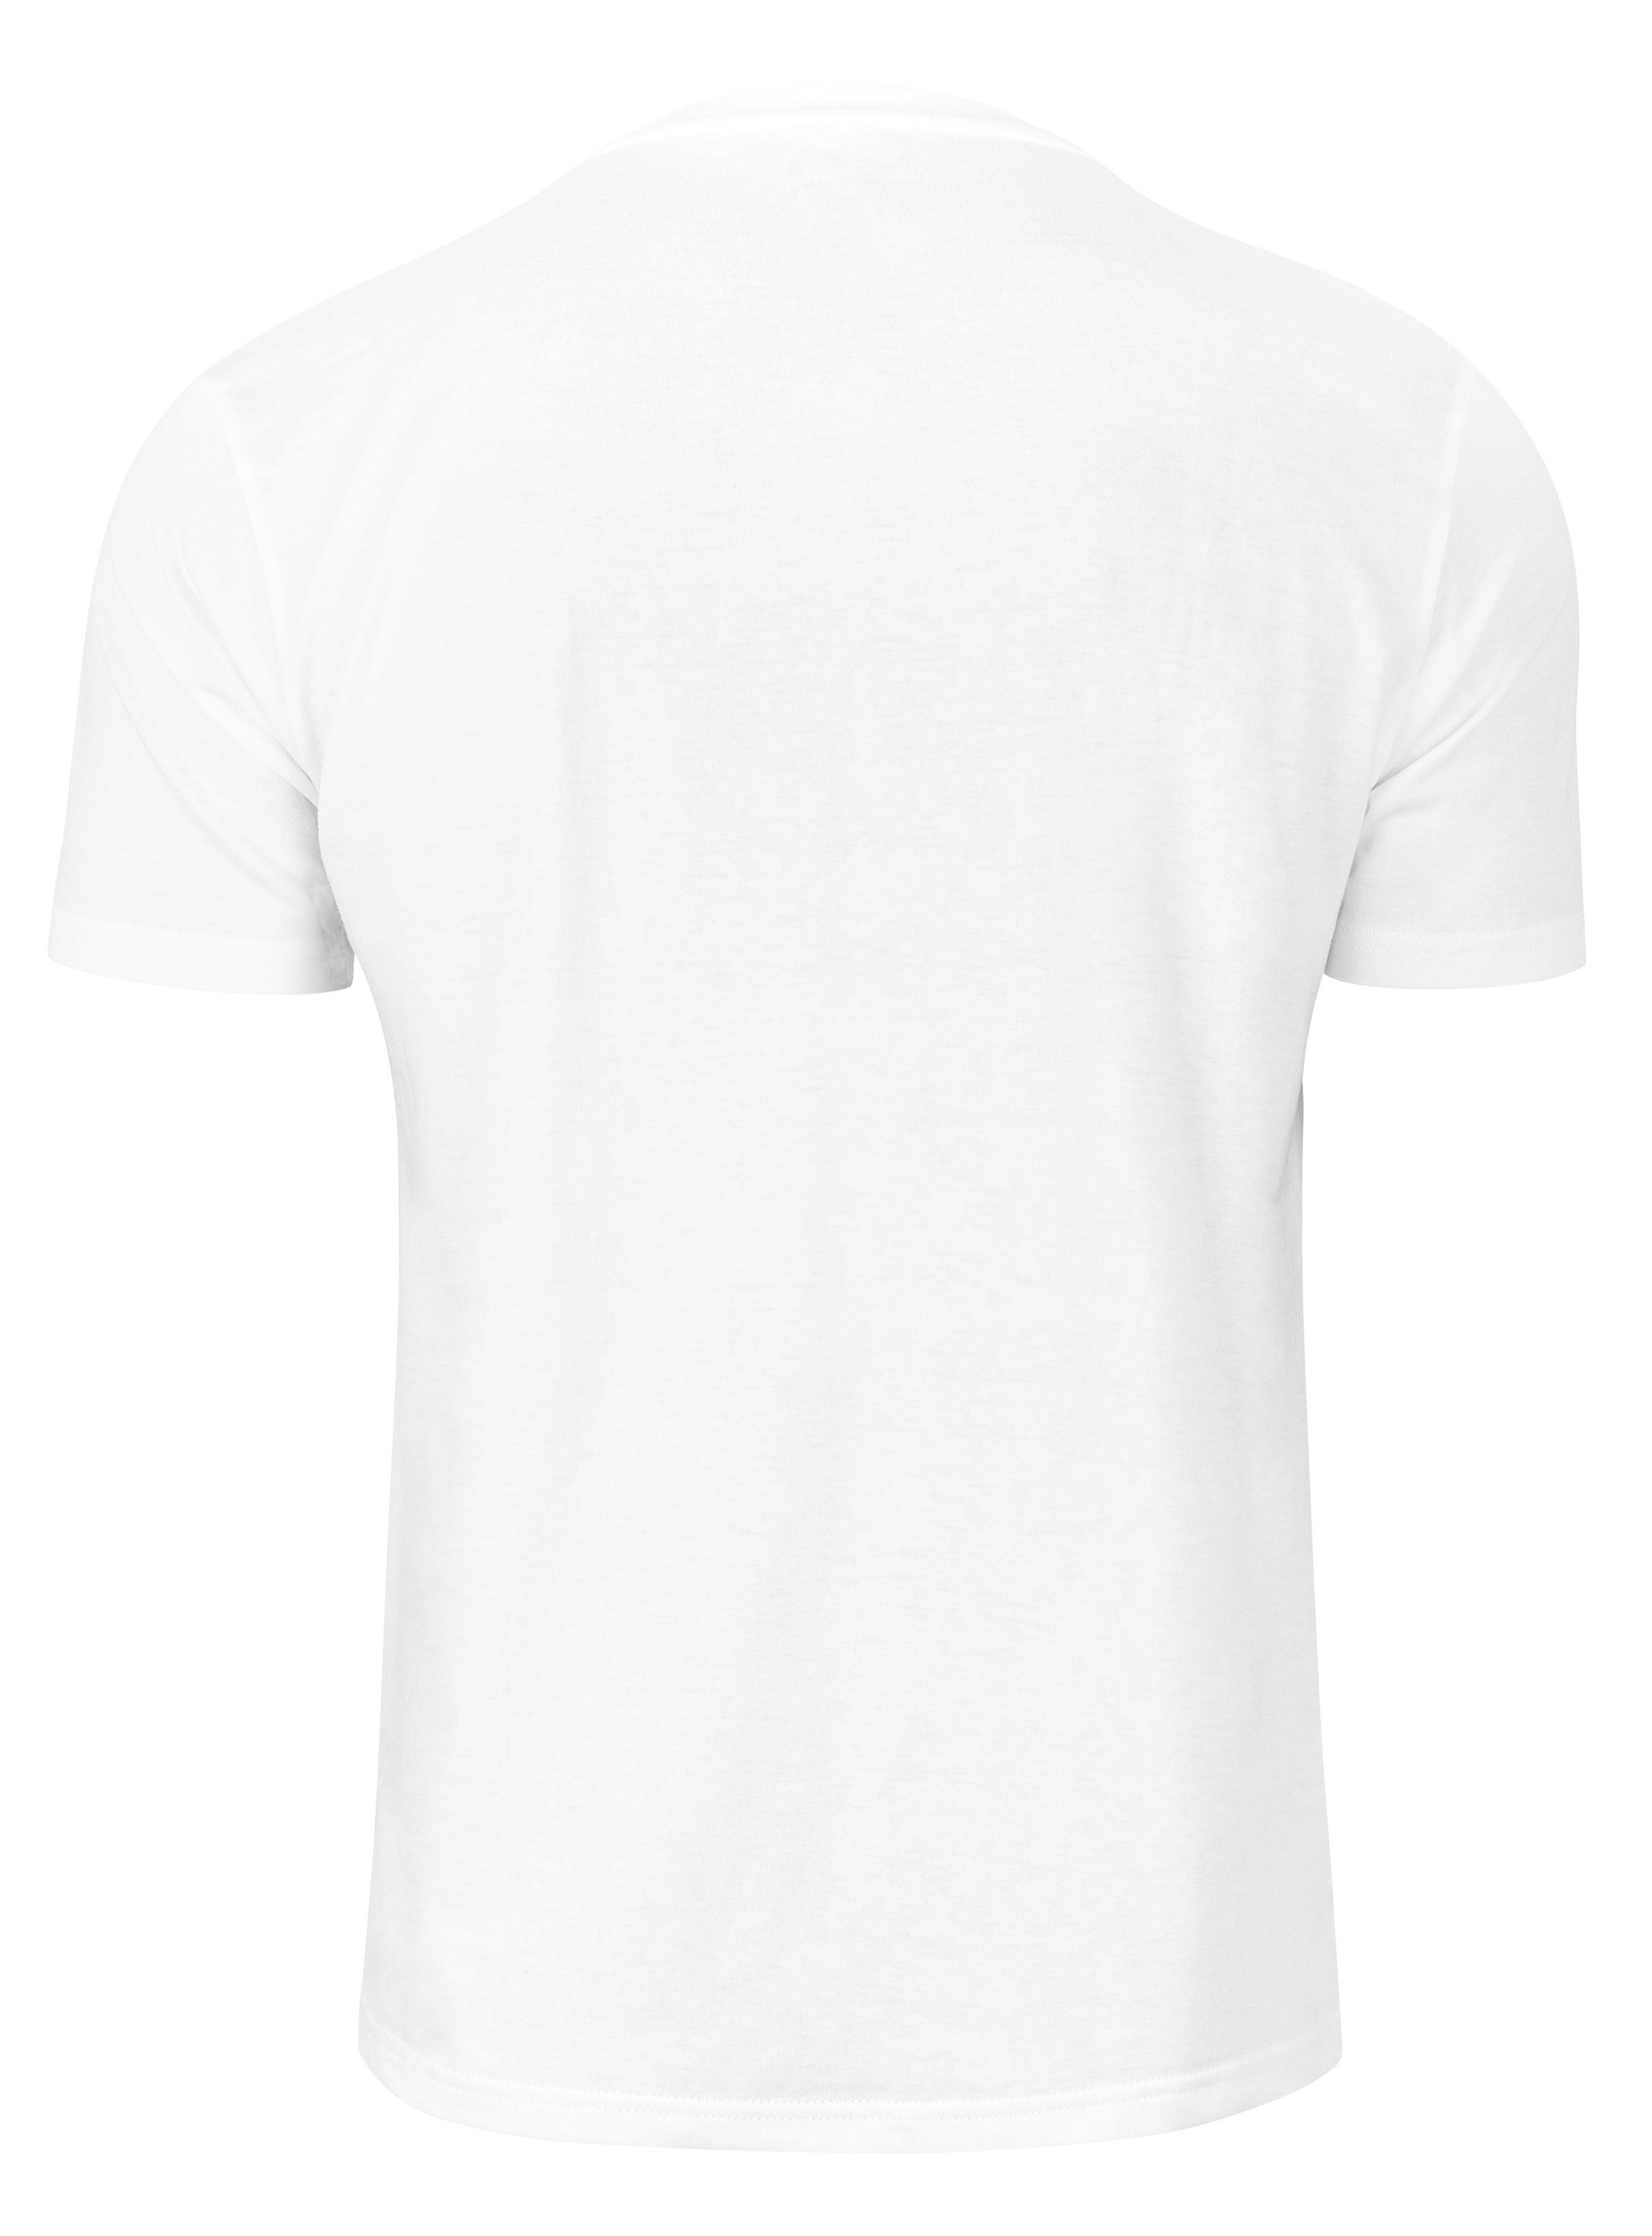 T-Shirt Cotton Prime® Weiß Vorderrad -